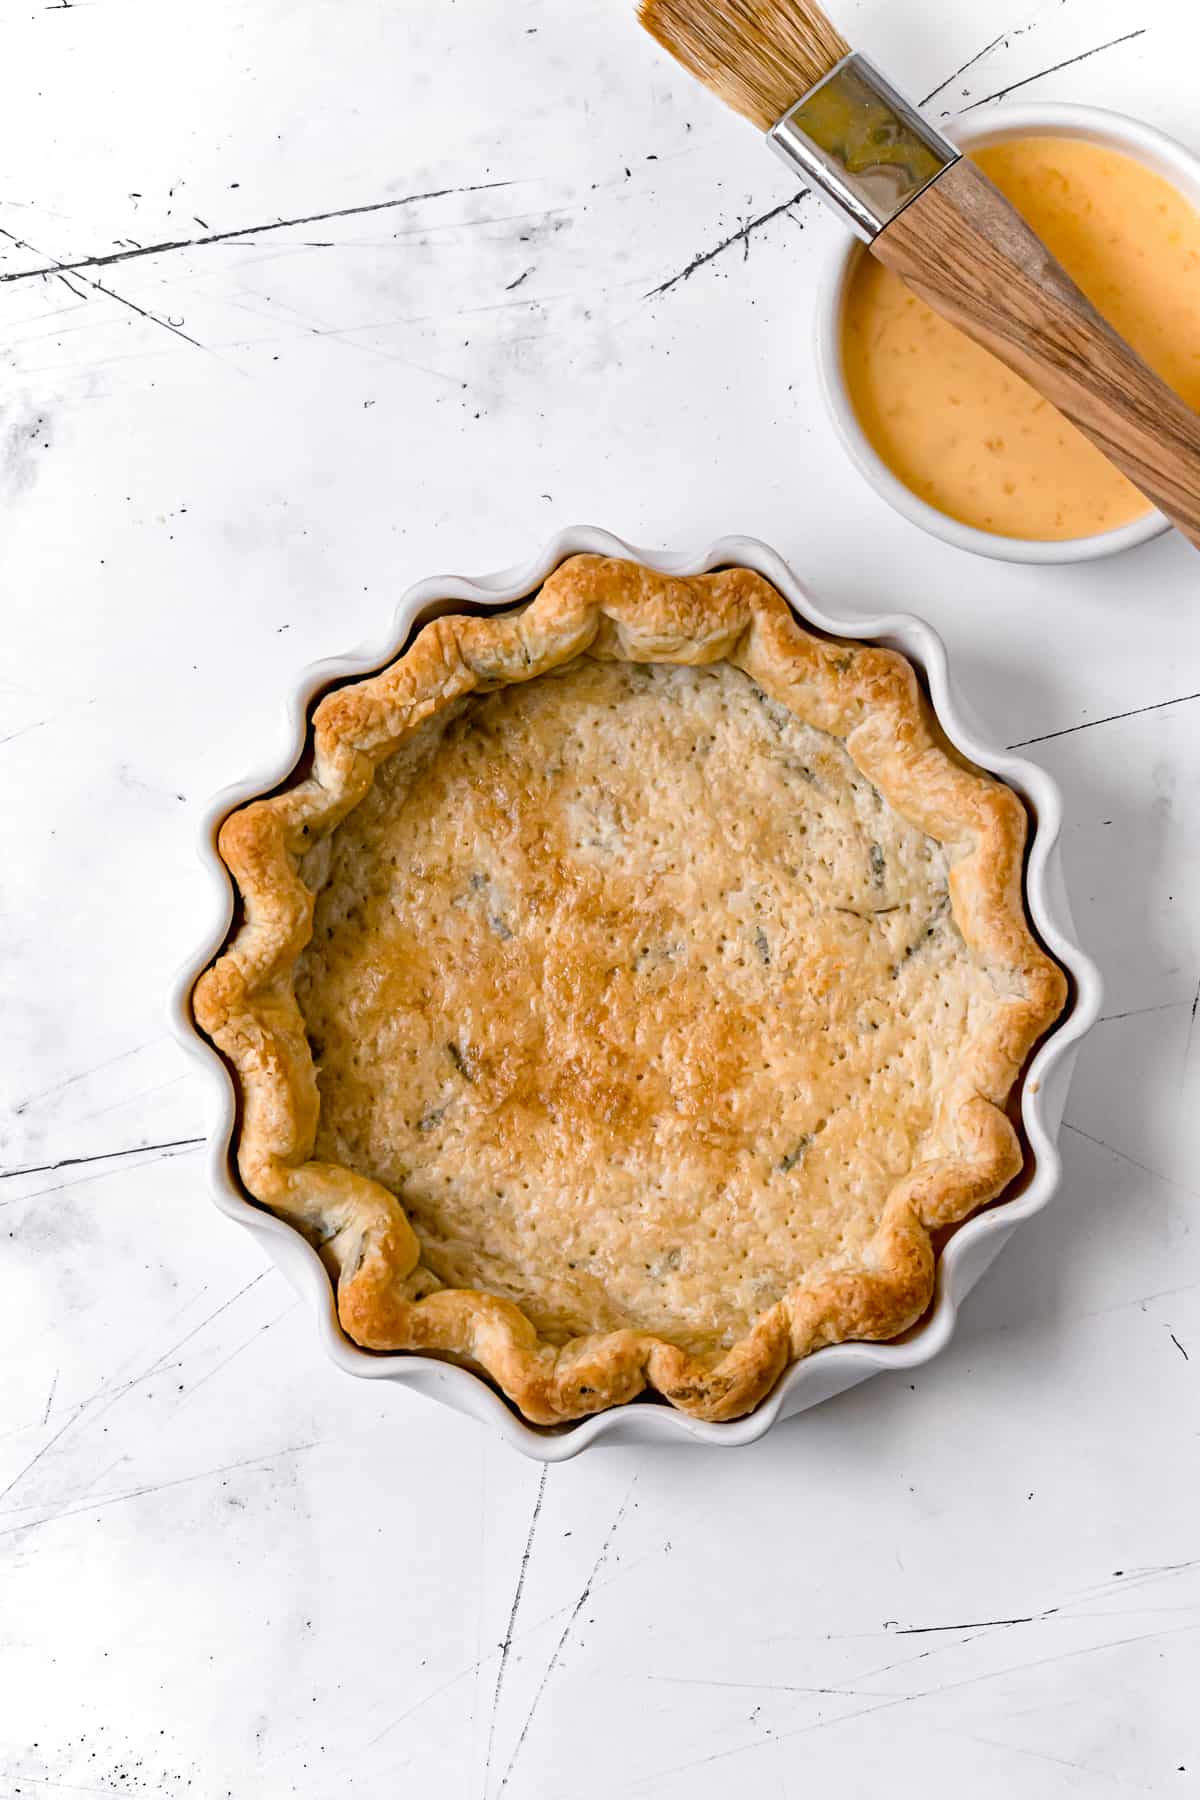 evenly golden blind baked pie crust in white pie dish.